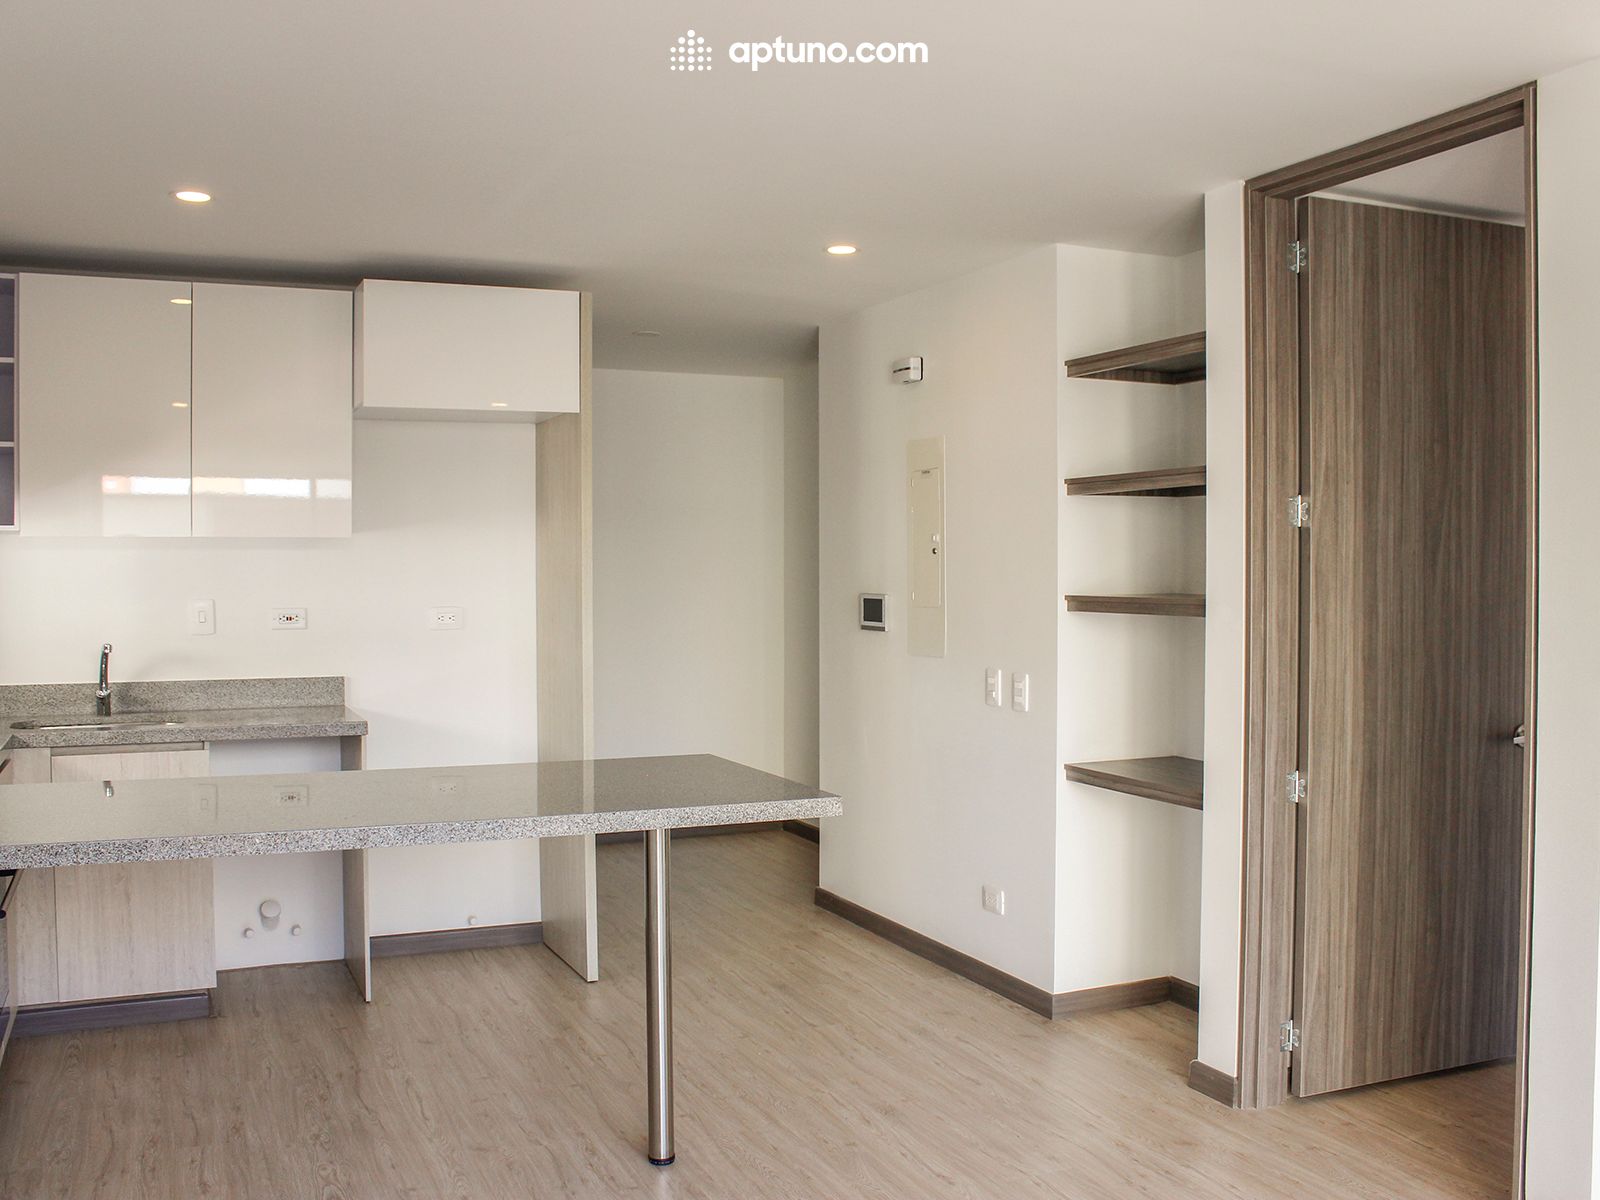 Apartamento en arriendo Caobos Salazar 56 m² - $ 2.160.000,00